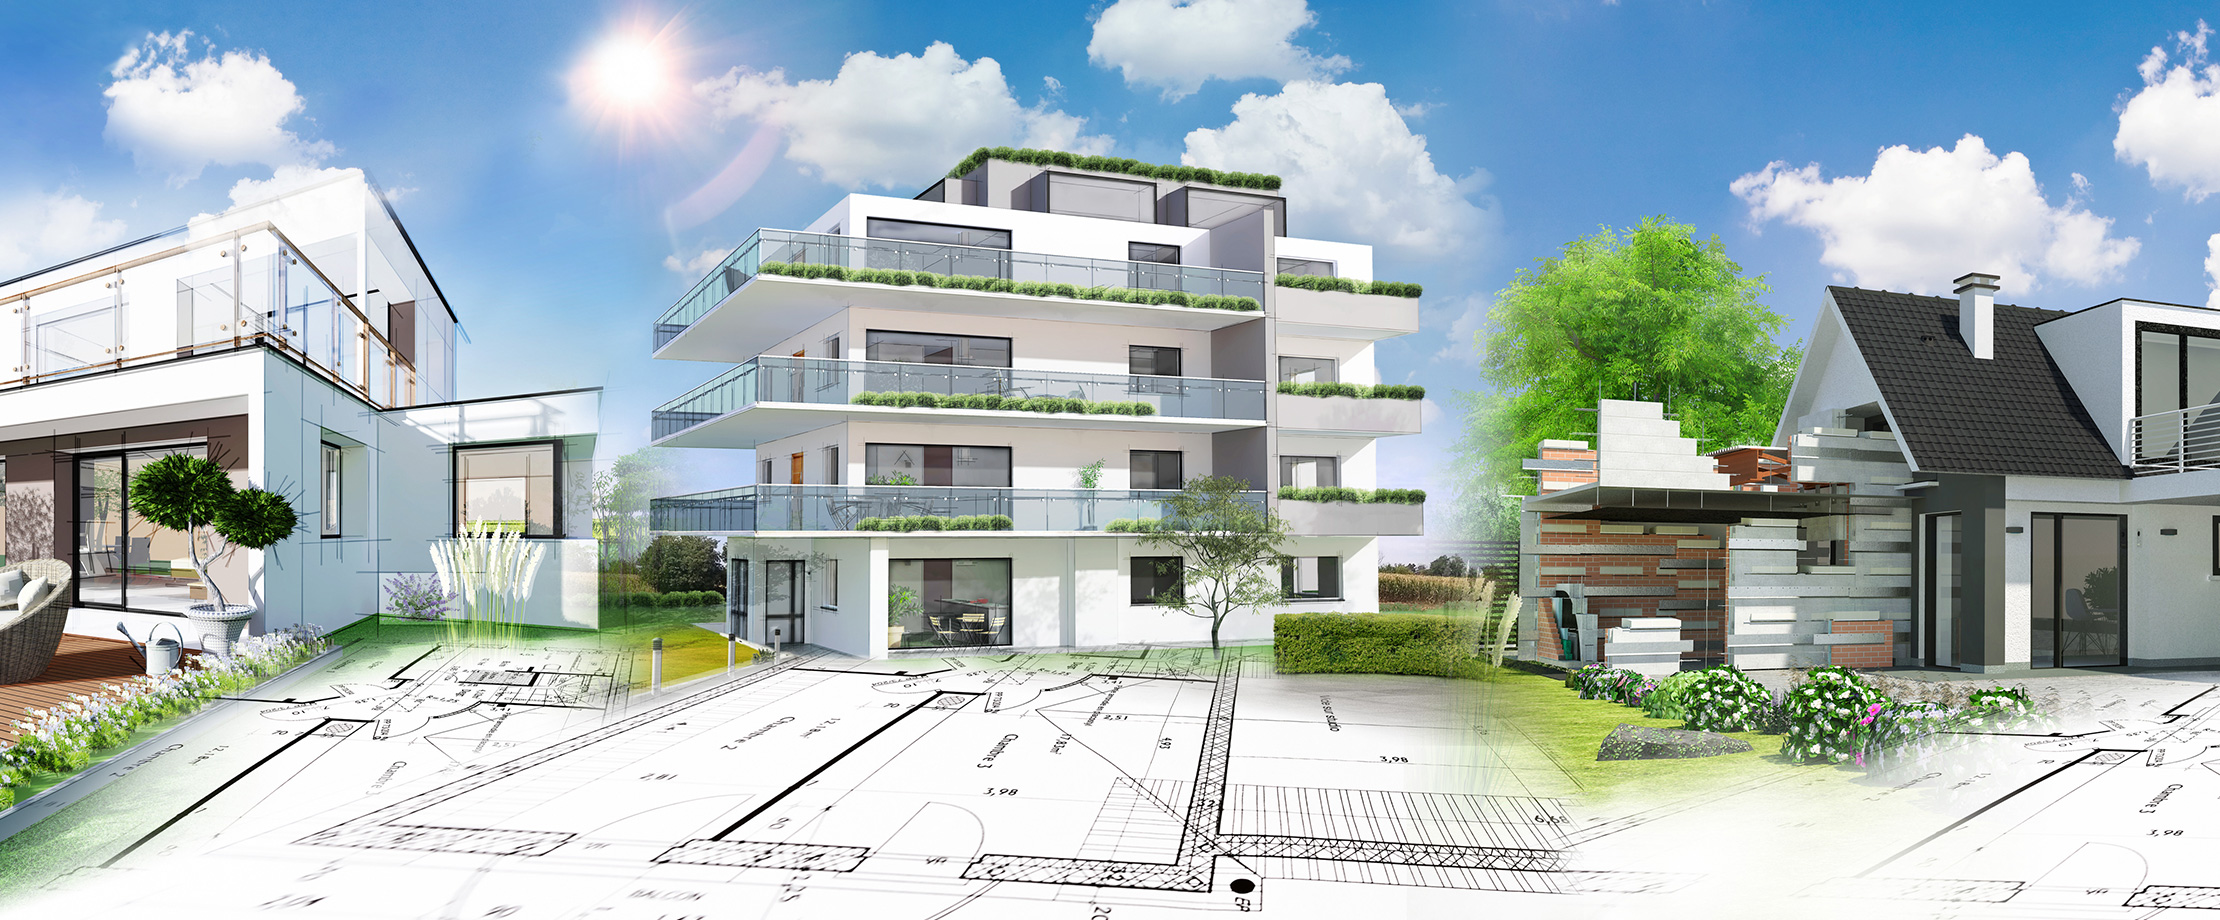 Ein animiertes Wohnhaus, ein animiertes Einfamilienhaus und ein animiertes Haus stehen in einer Grünlandschaft auf einem gezeichneten Plan. 